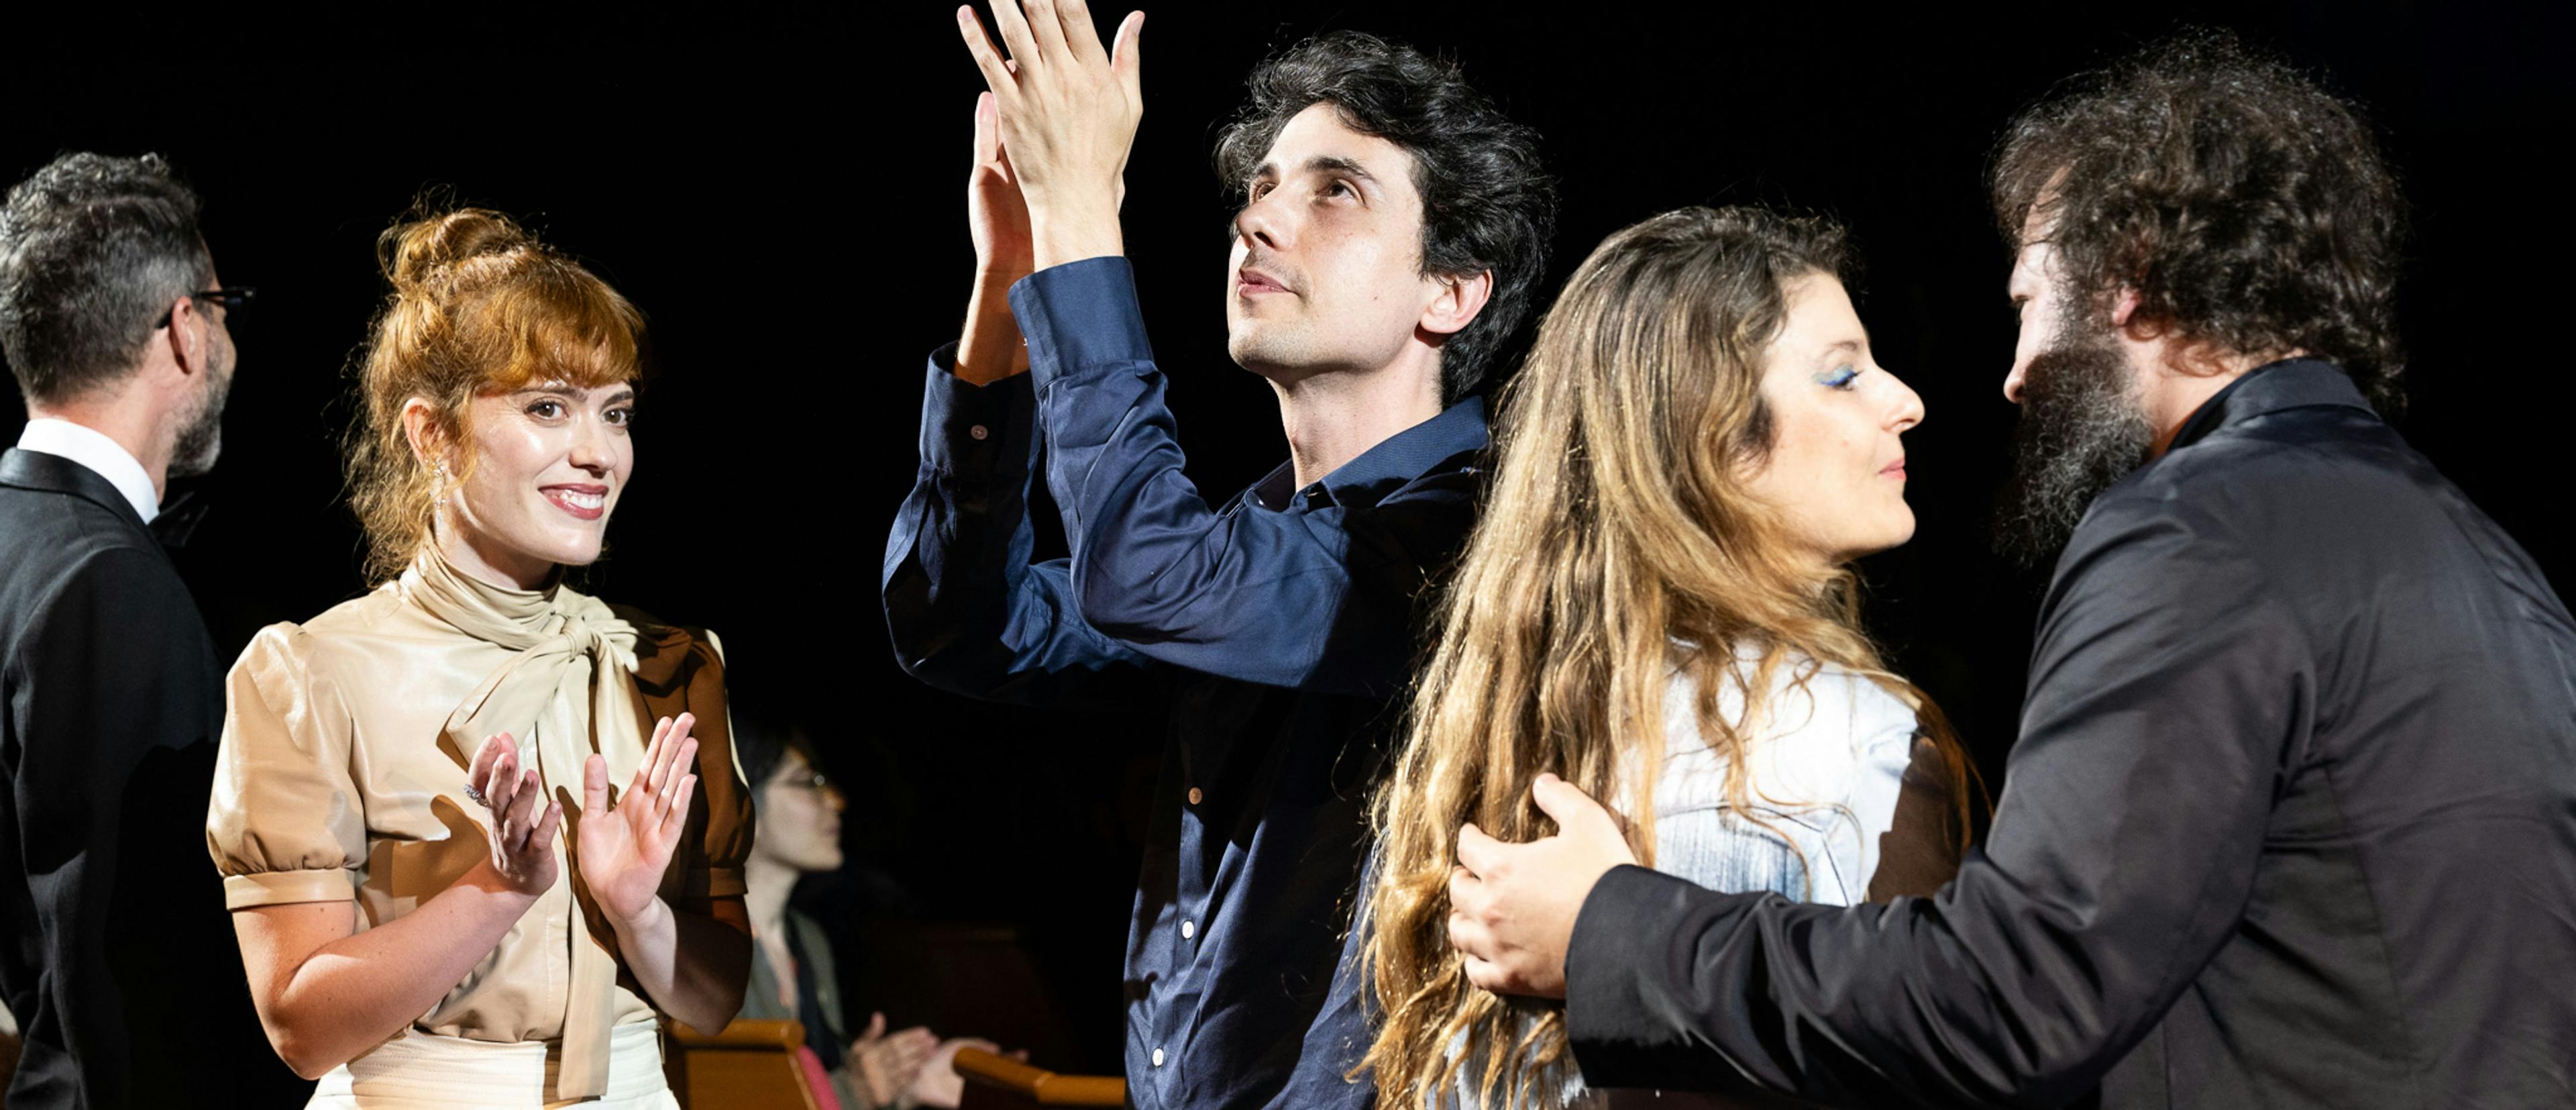 Itsaso Arana y Jonás Trueba aplauden tras la proyección de 'Volveréis' en la Quincena de realizadores